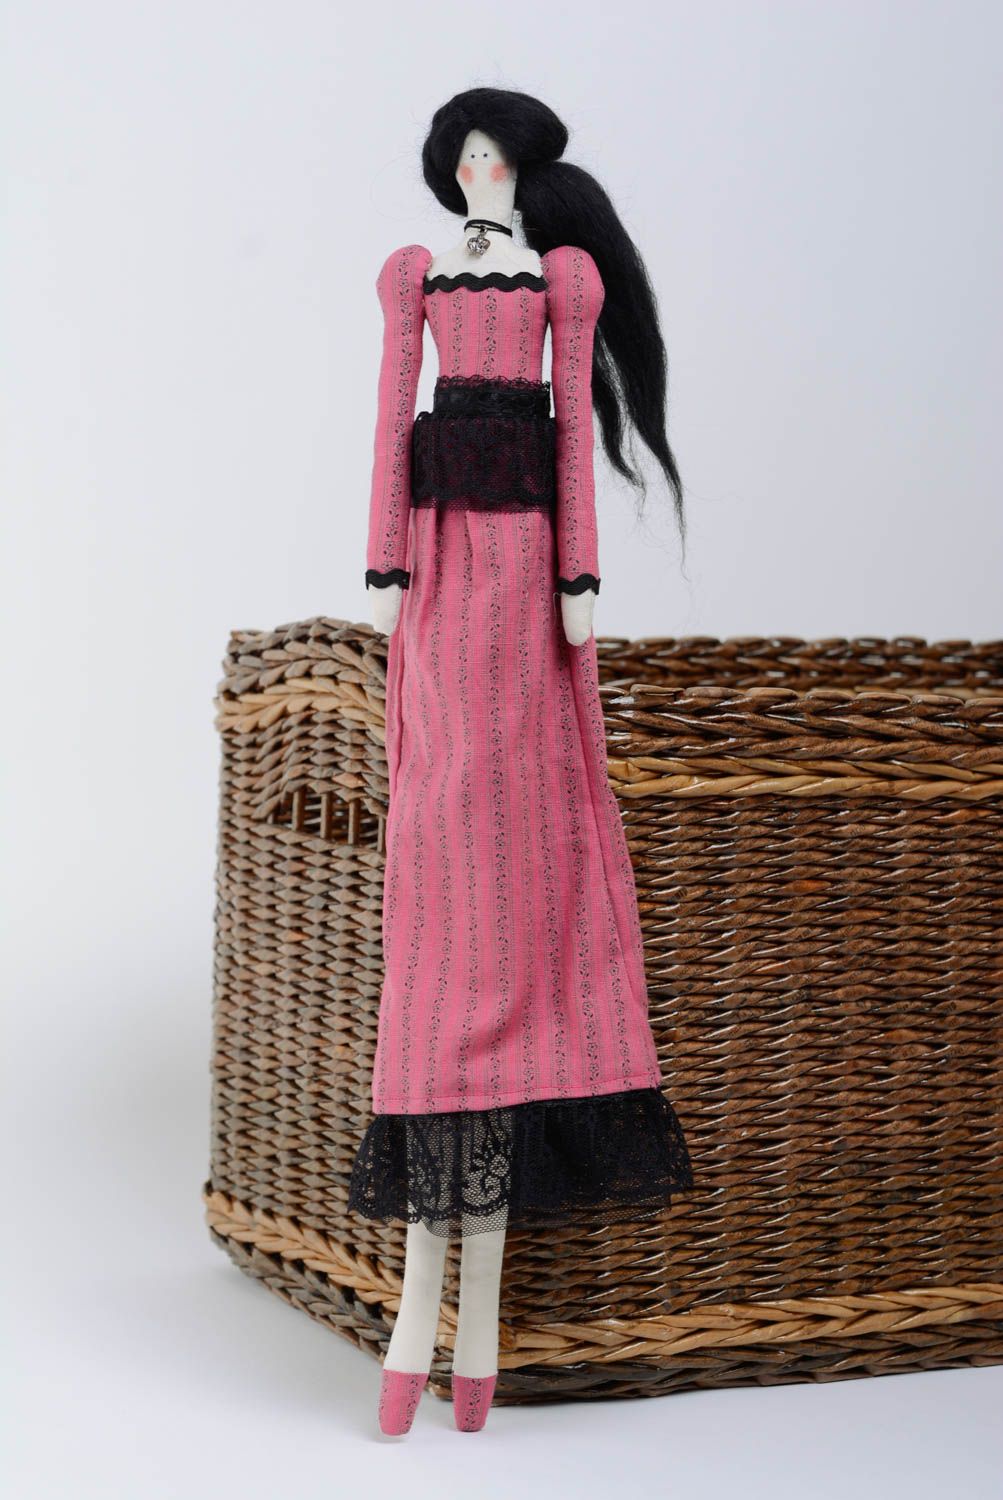 Игрушка кукла из ткани с черными волосами небольшая в розовом платье хэнд мейд фото 1